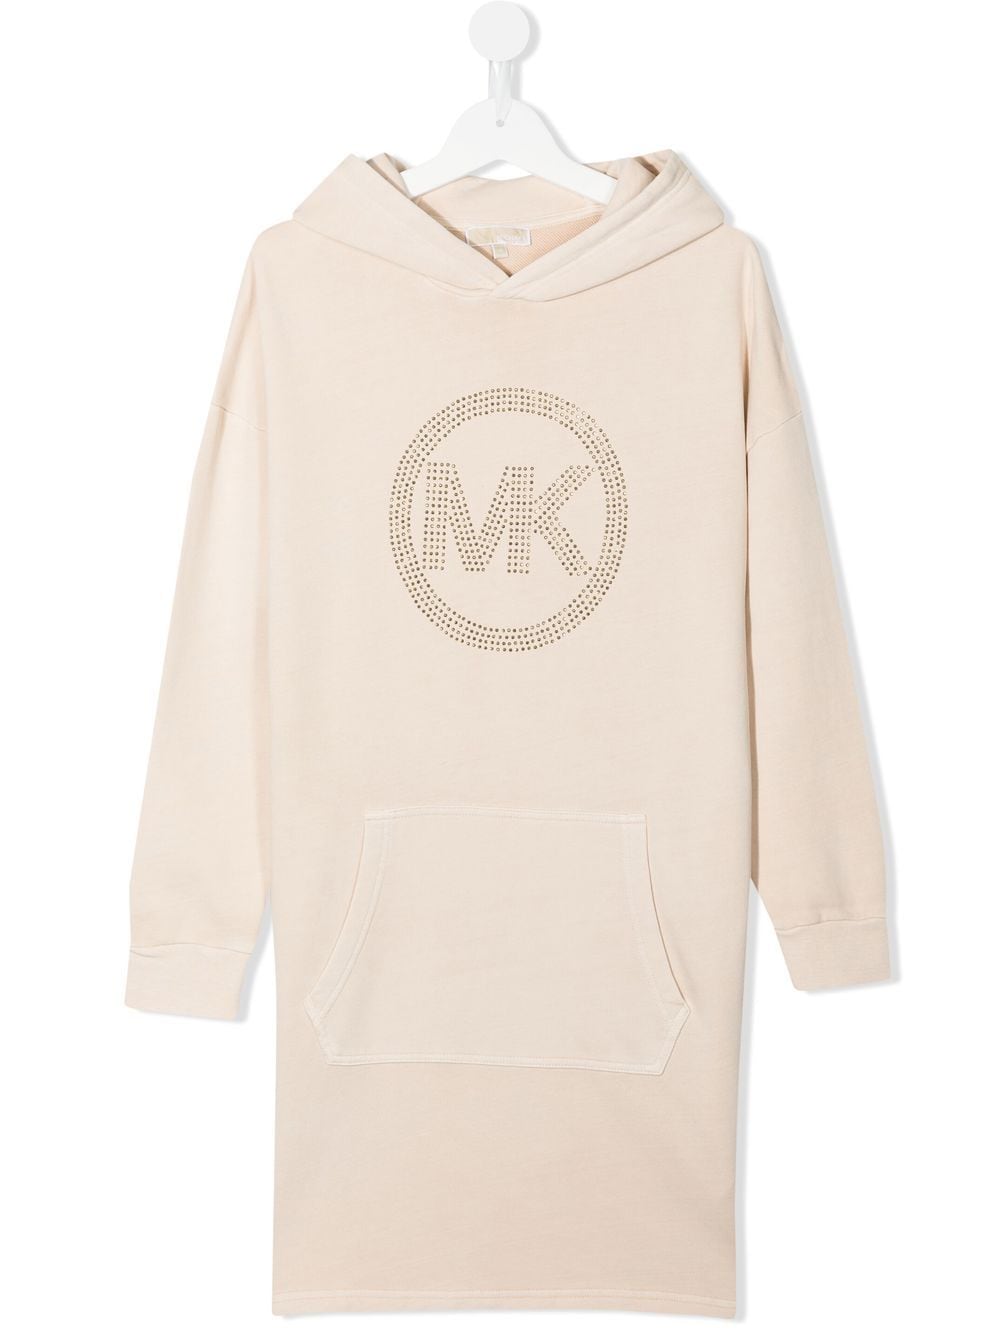 Michael Kors Kids crystal logo-embellished hooded dress - Brown